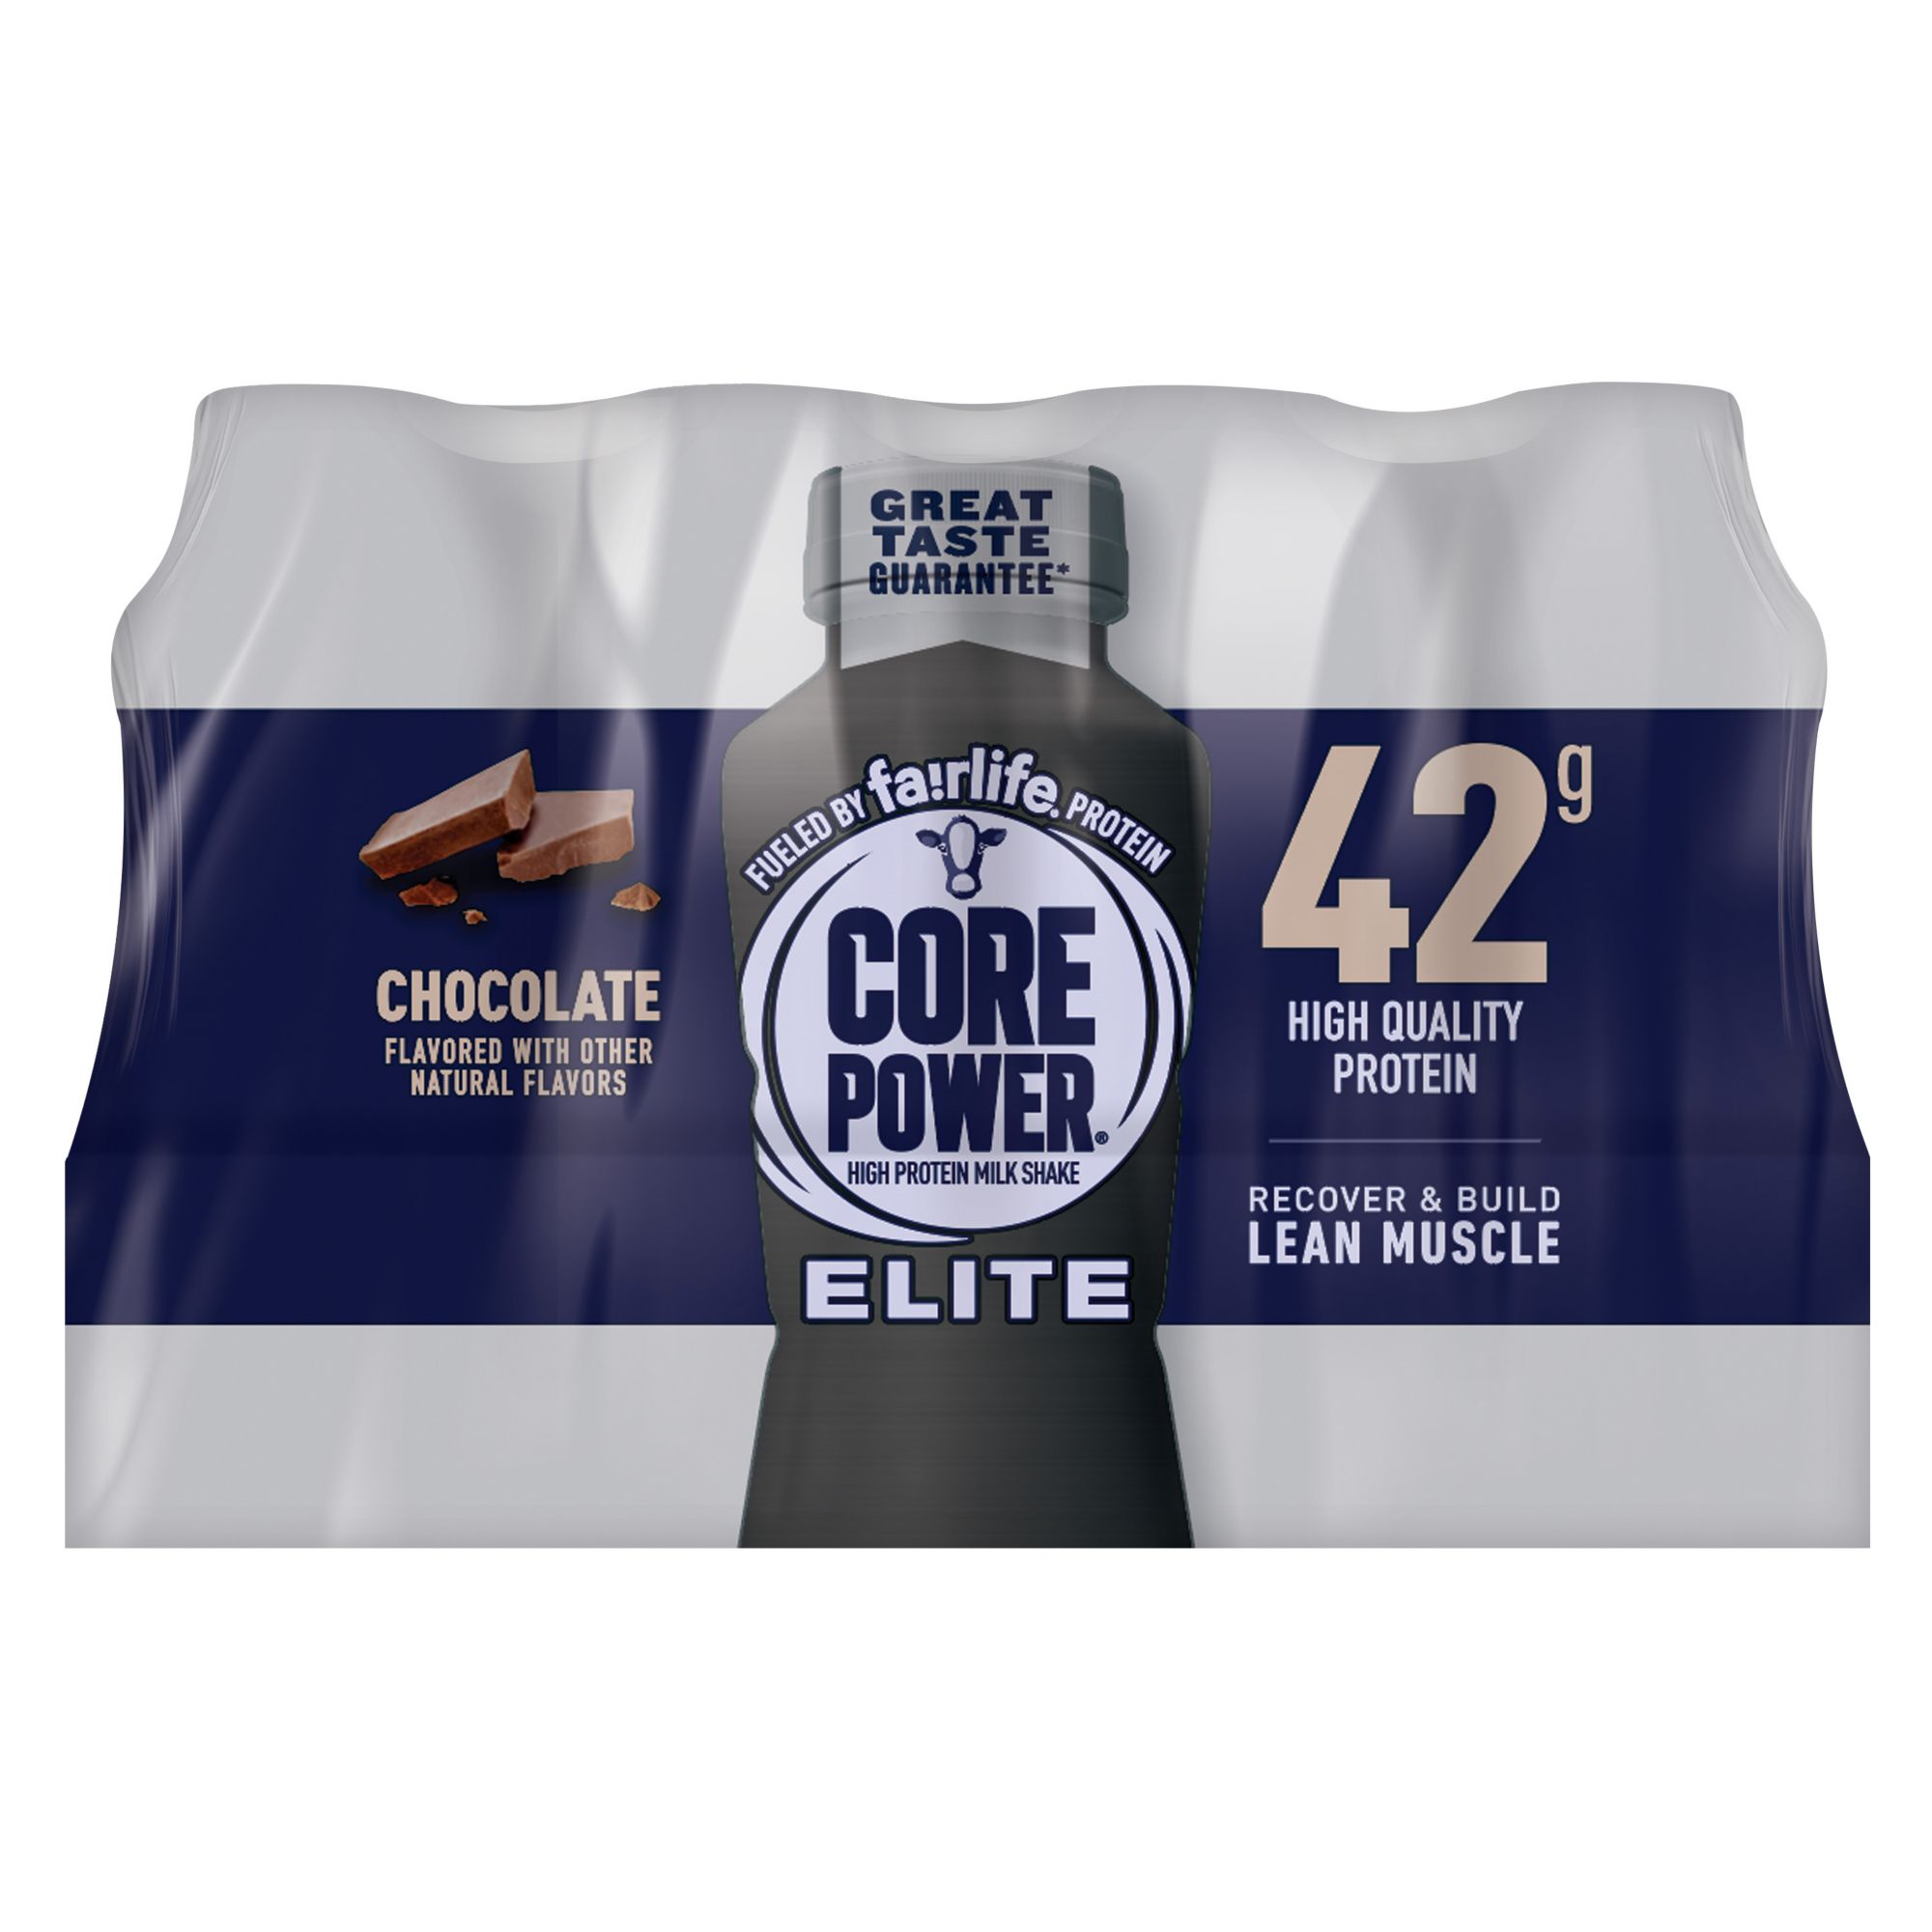 Core Power Elite Chocolate, 8 ct./14 oz.